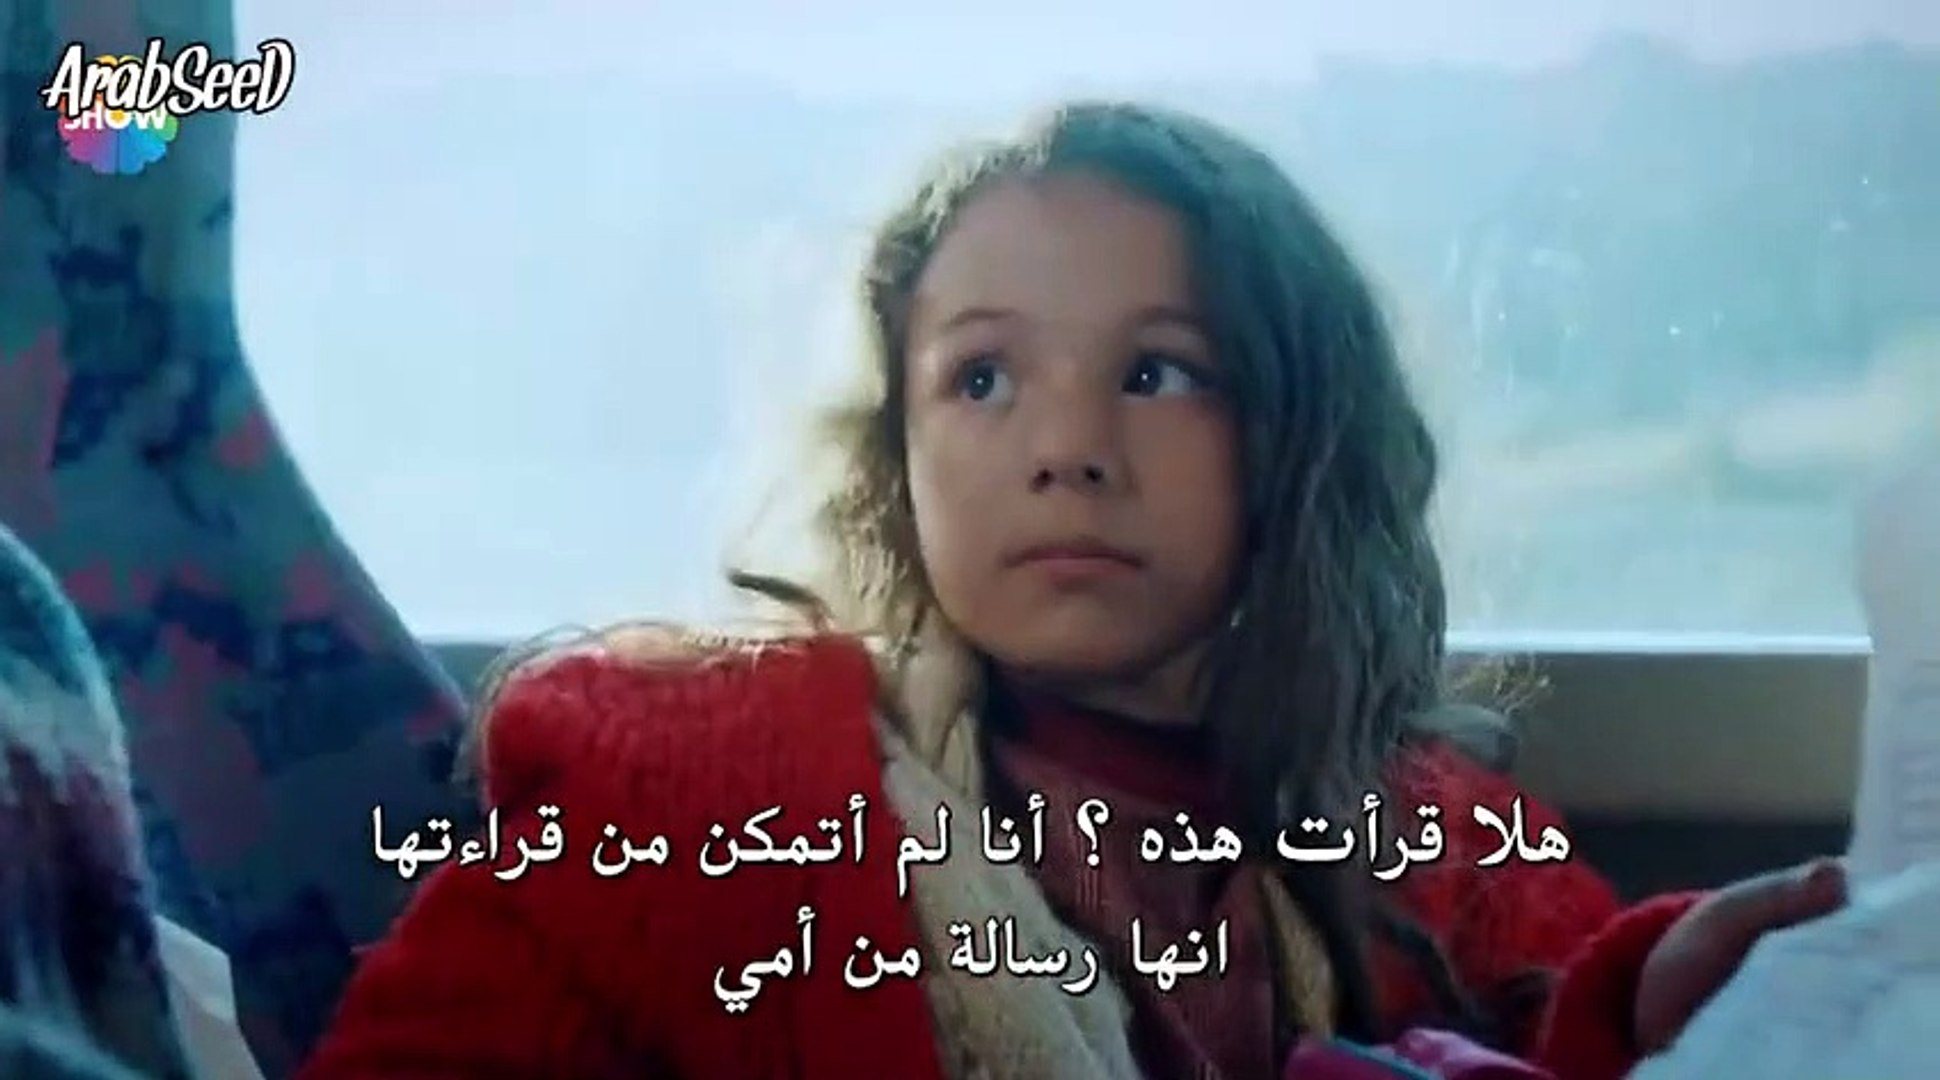 مسلسل الحب يجعلنا نبكي الحلقة 1 جزء 1 مترجم للعربية فيديو Dailymotion